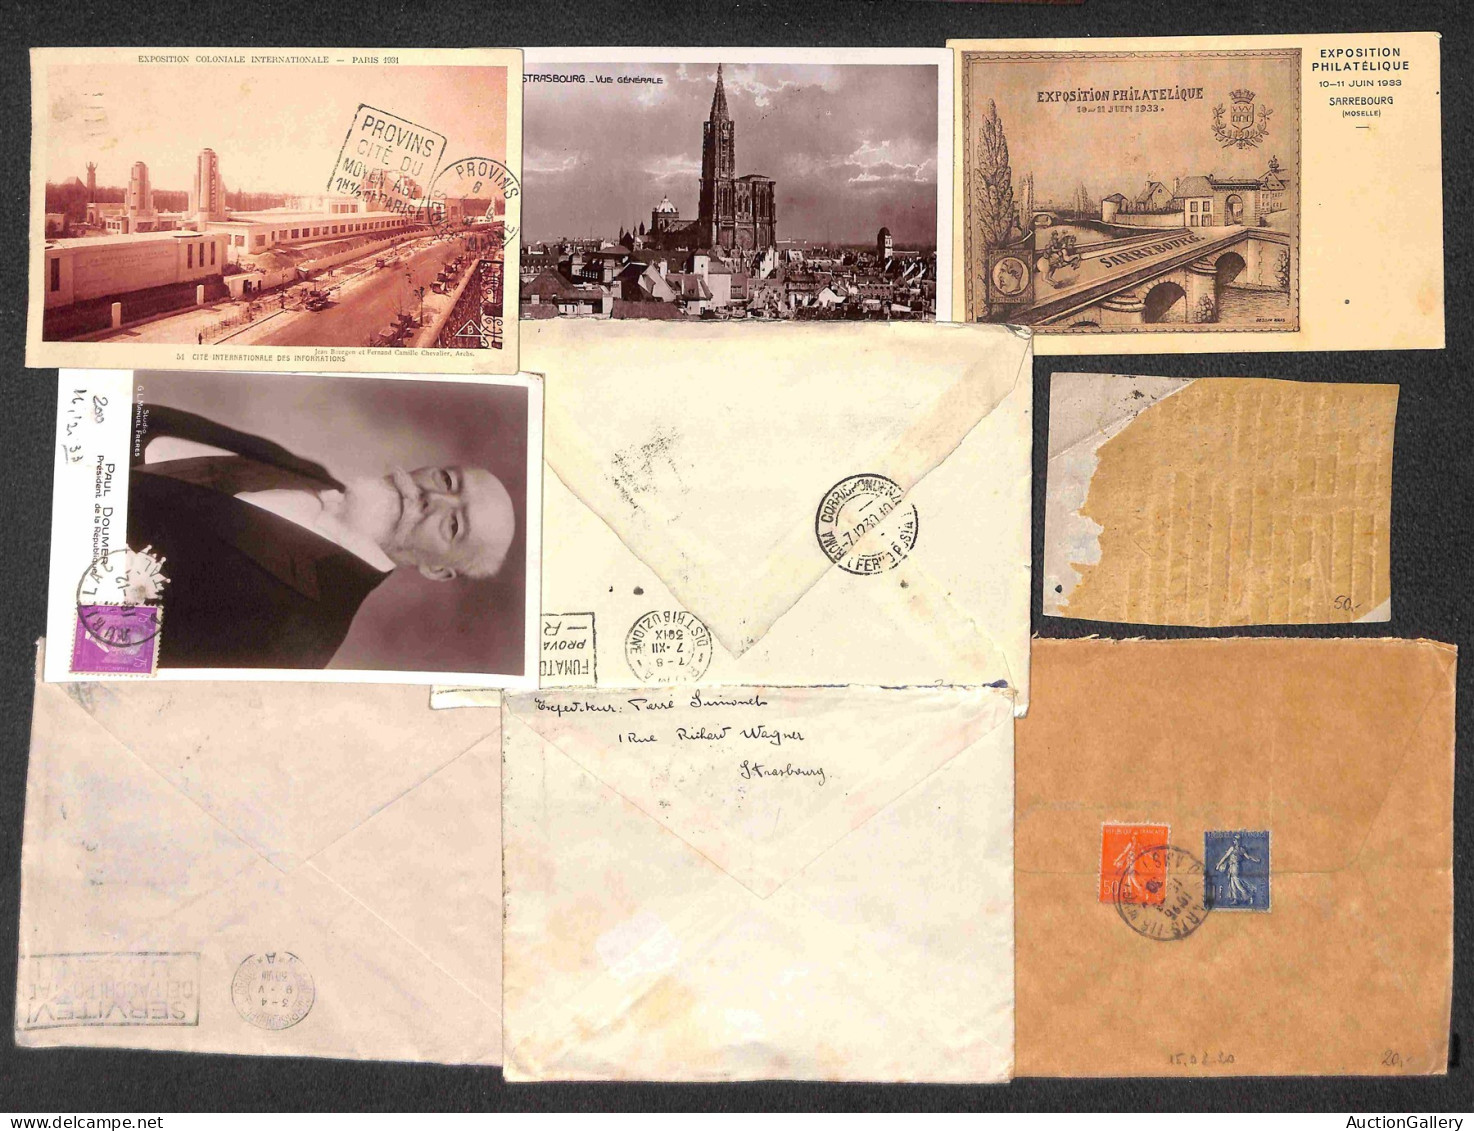 Lotti&Collezioni - FRANCIA - 1930/1938 - Ventisei buste + tredici cartoline con affrancature del periodo